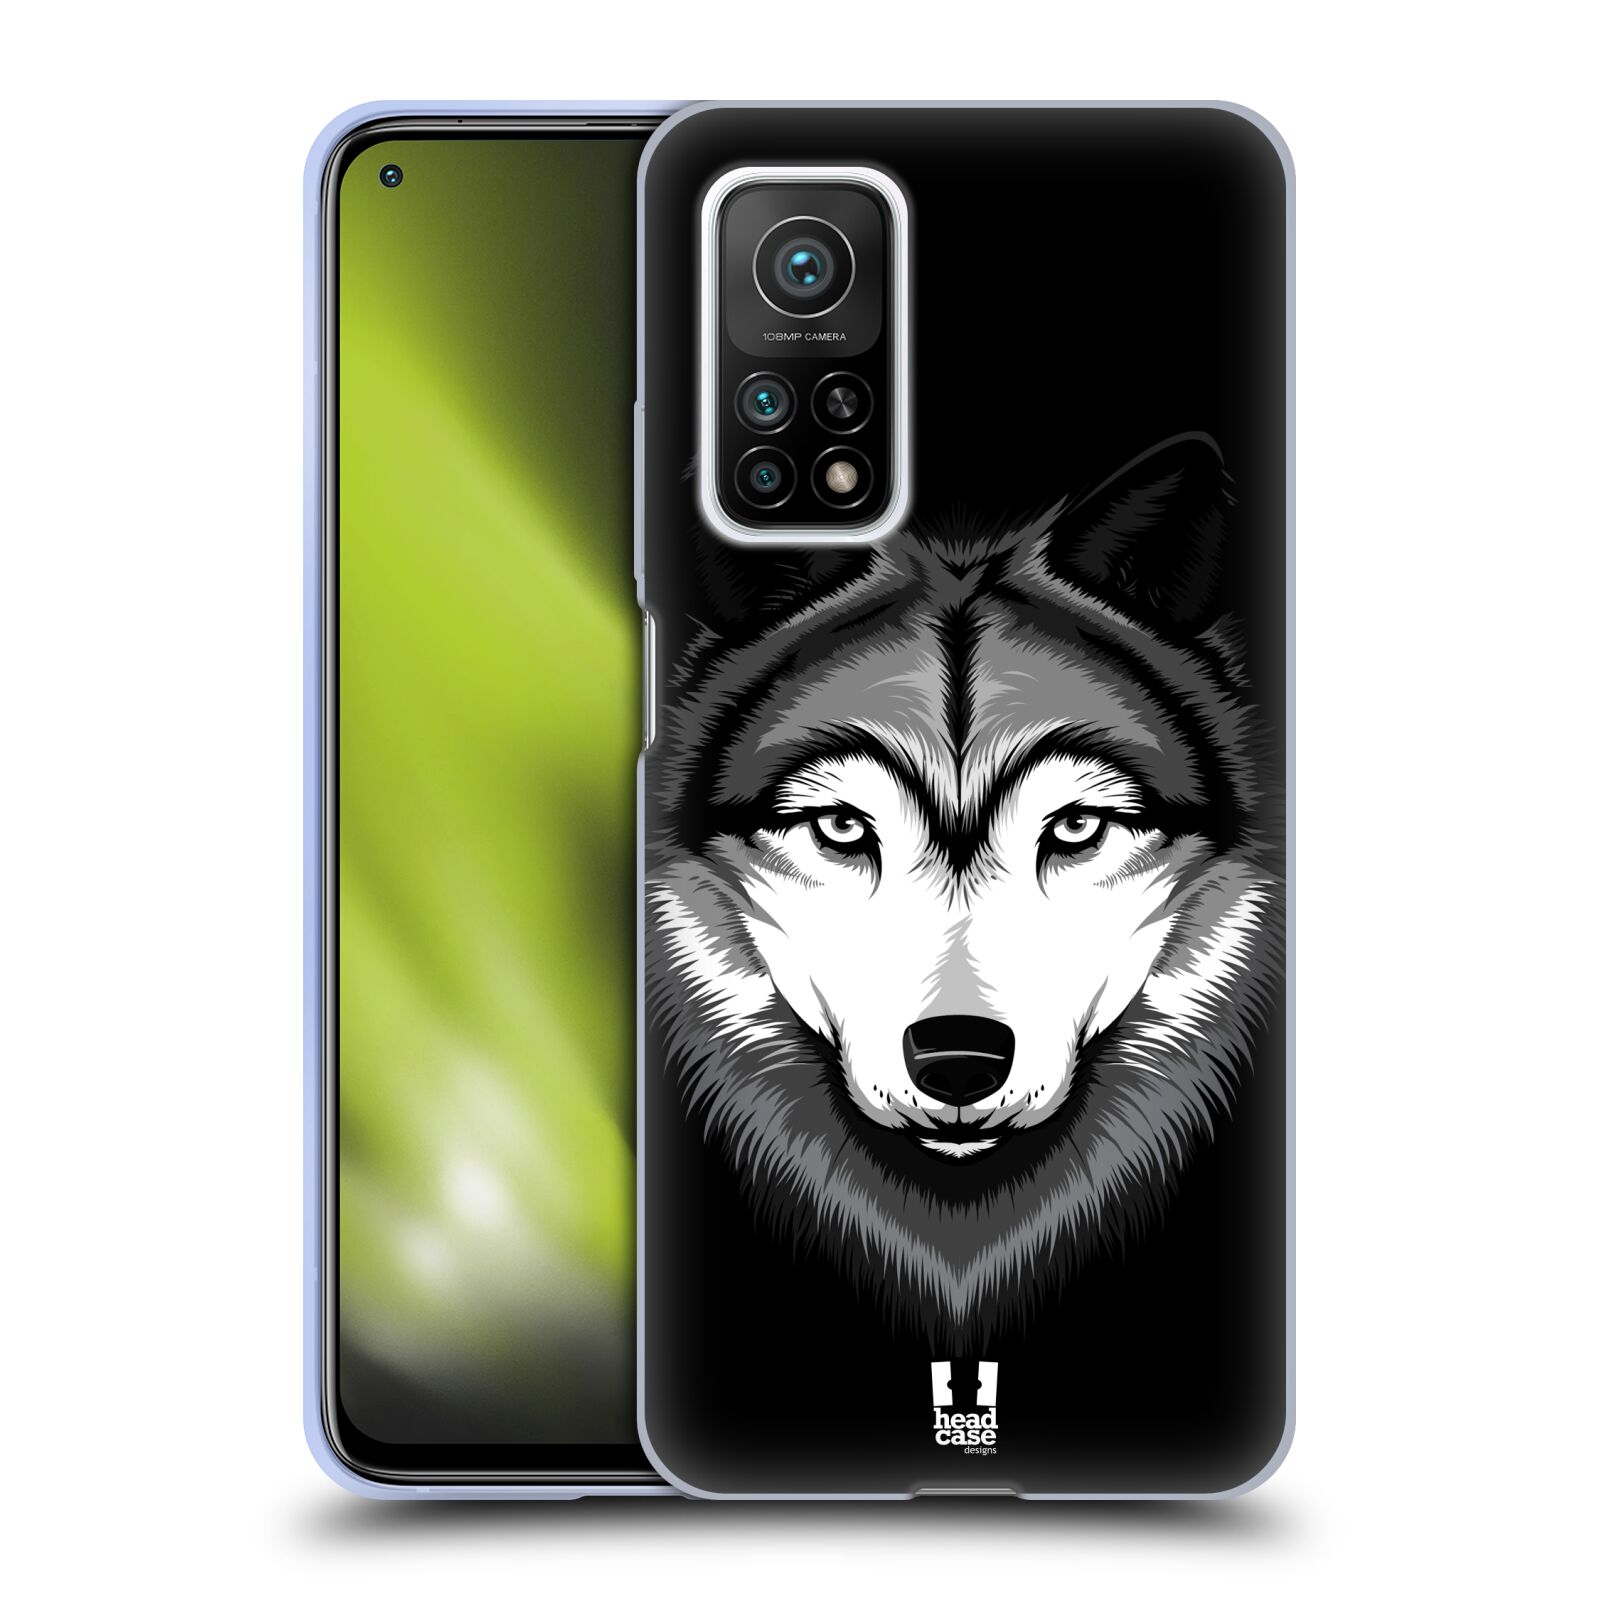 Plastový obal HEAD CASE na mobil Xiaomi Mi 10T a Mi 10T PRO vzor Zvíře kreslená tvář 2 vlk